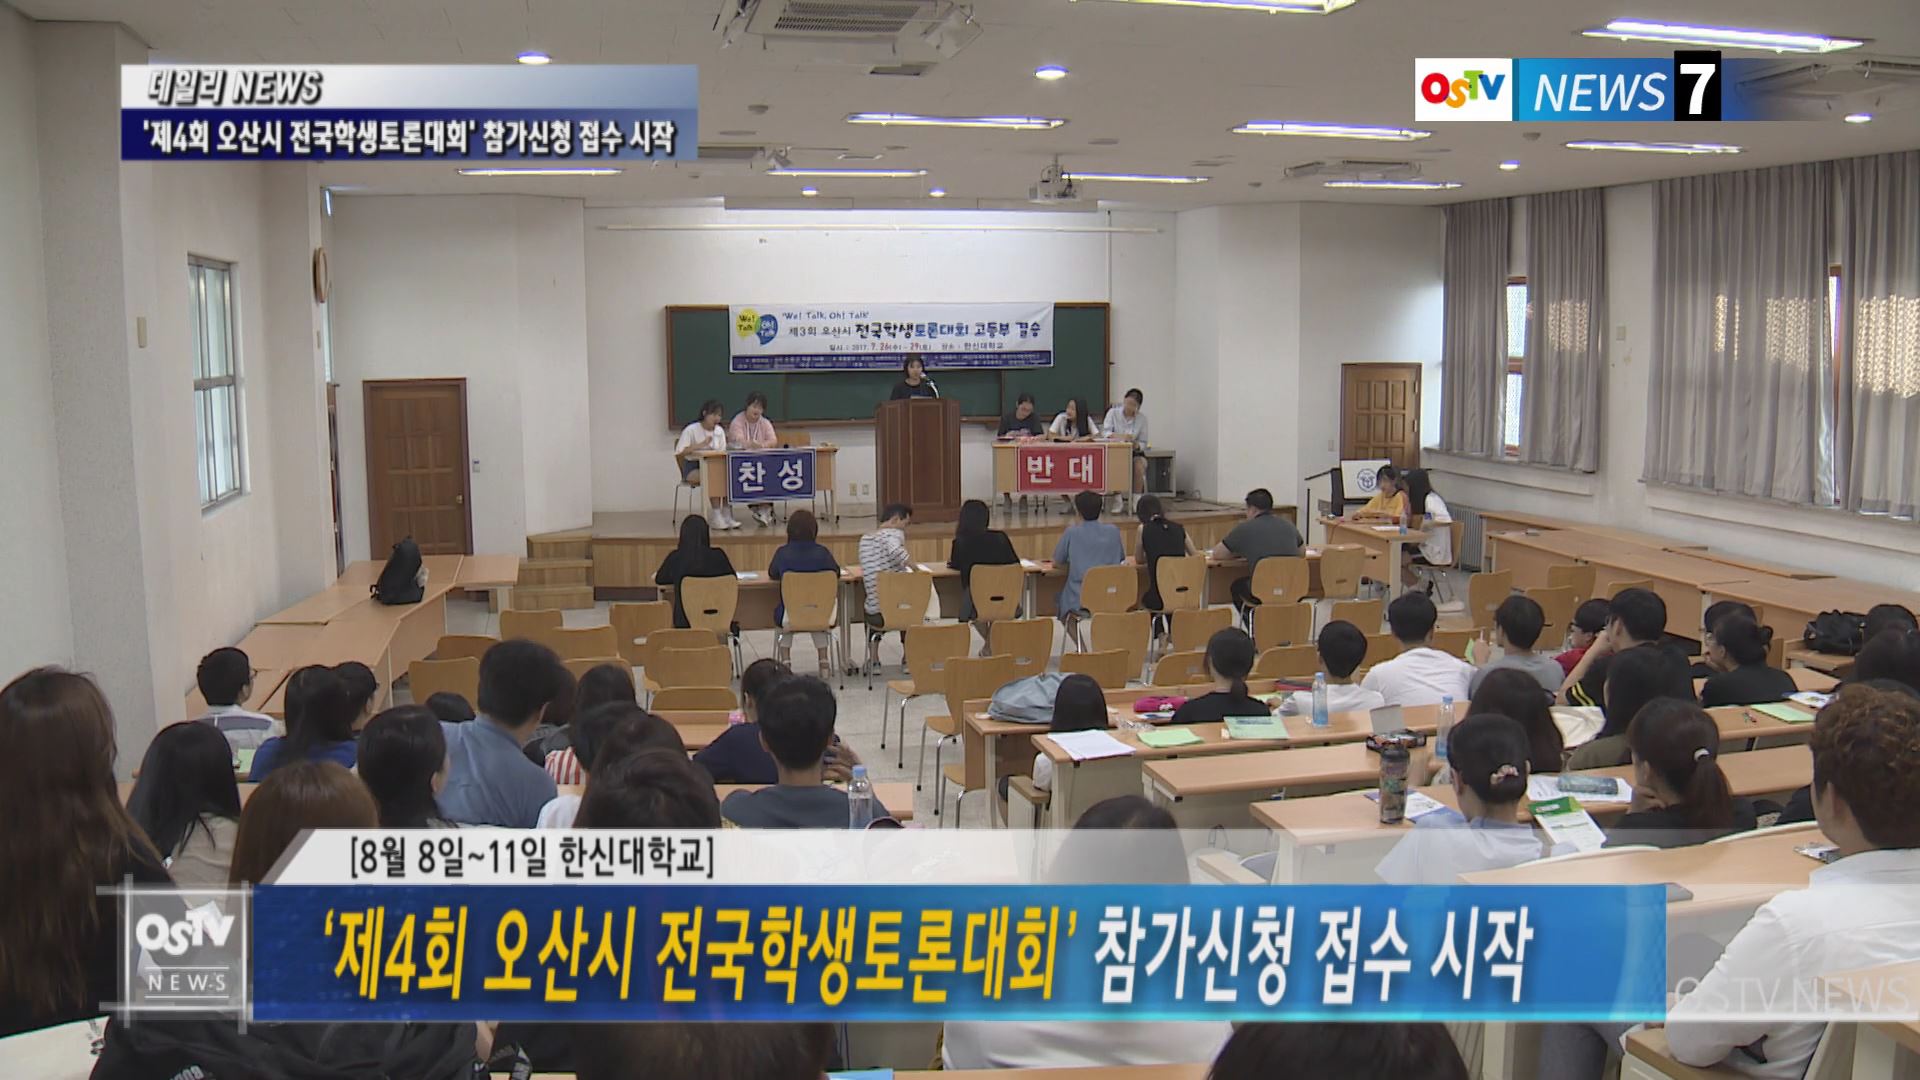 ‘제4회 오산시 전국학생토론대회’ 참가신청 접수 시작 